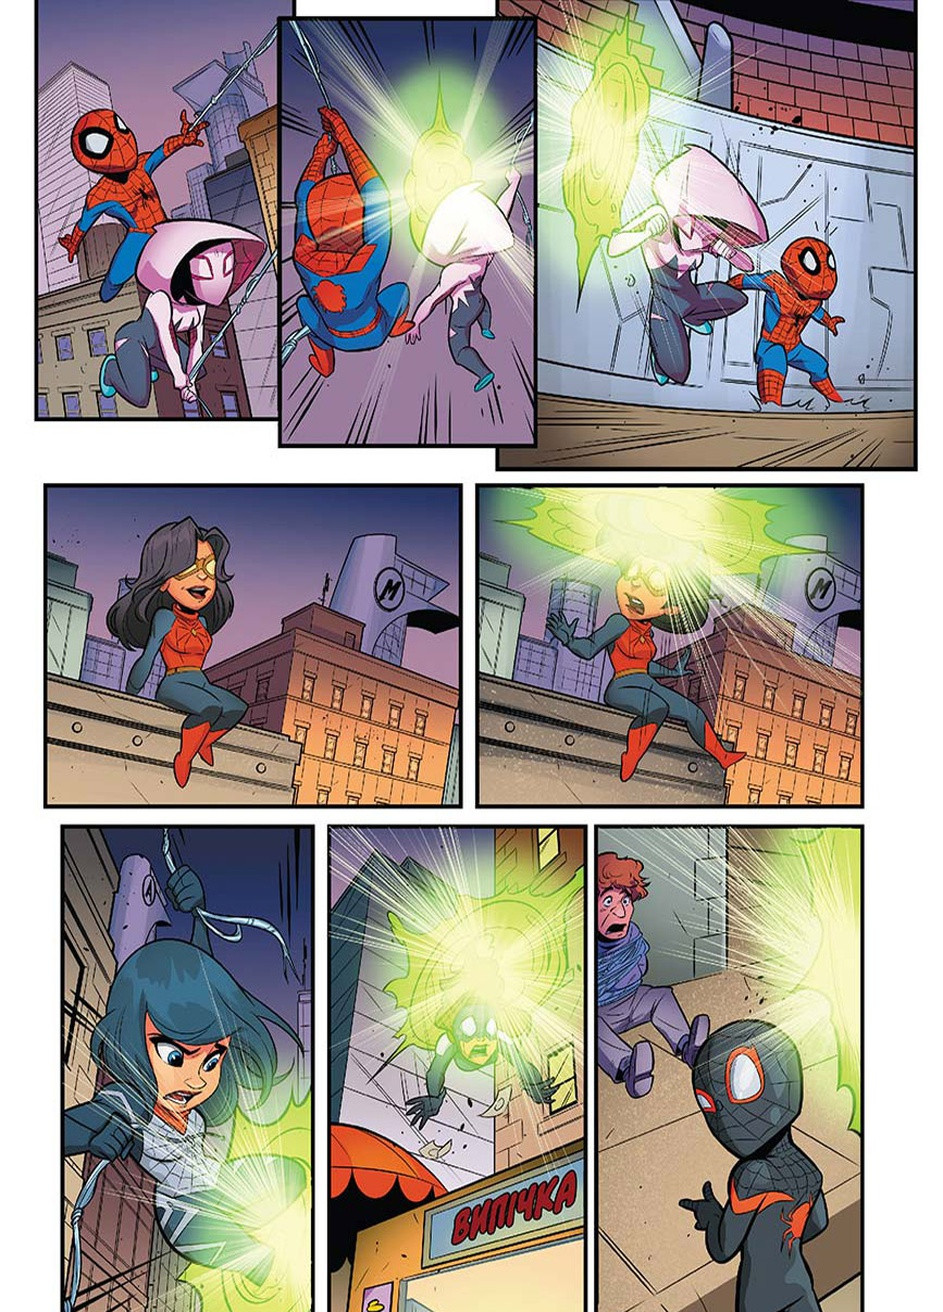 Комикс Firepaw Сomics №12 Супергеройские приключения. Сквозь паучи миры." Marvel (257038314)